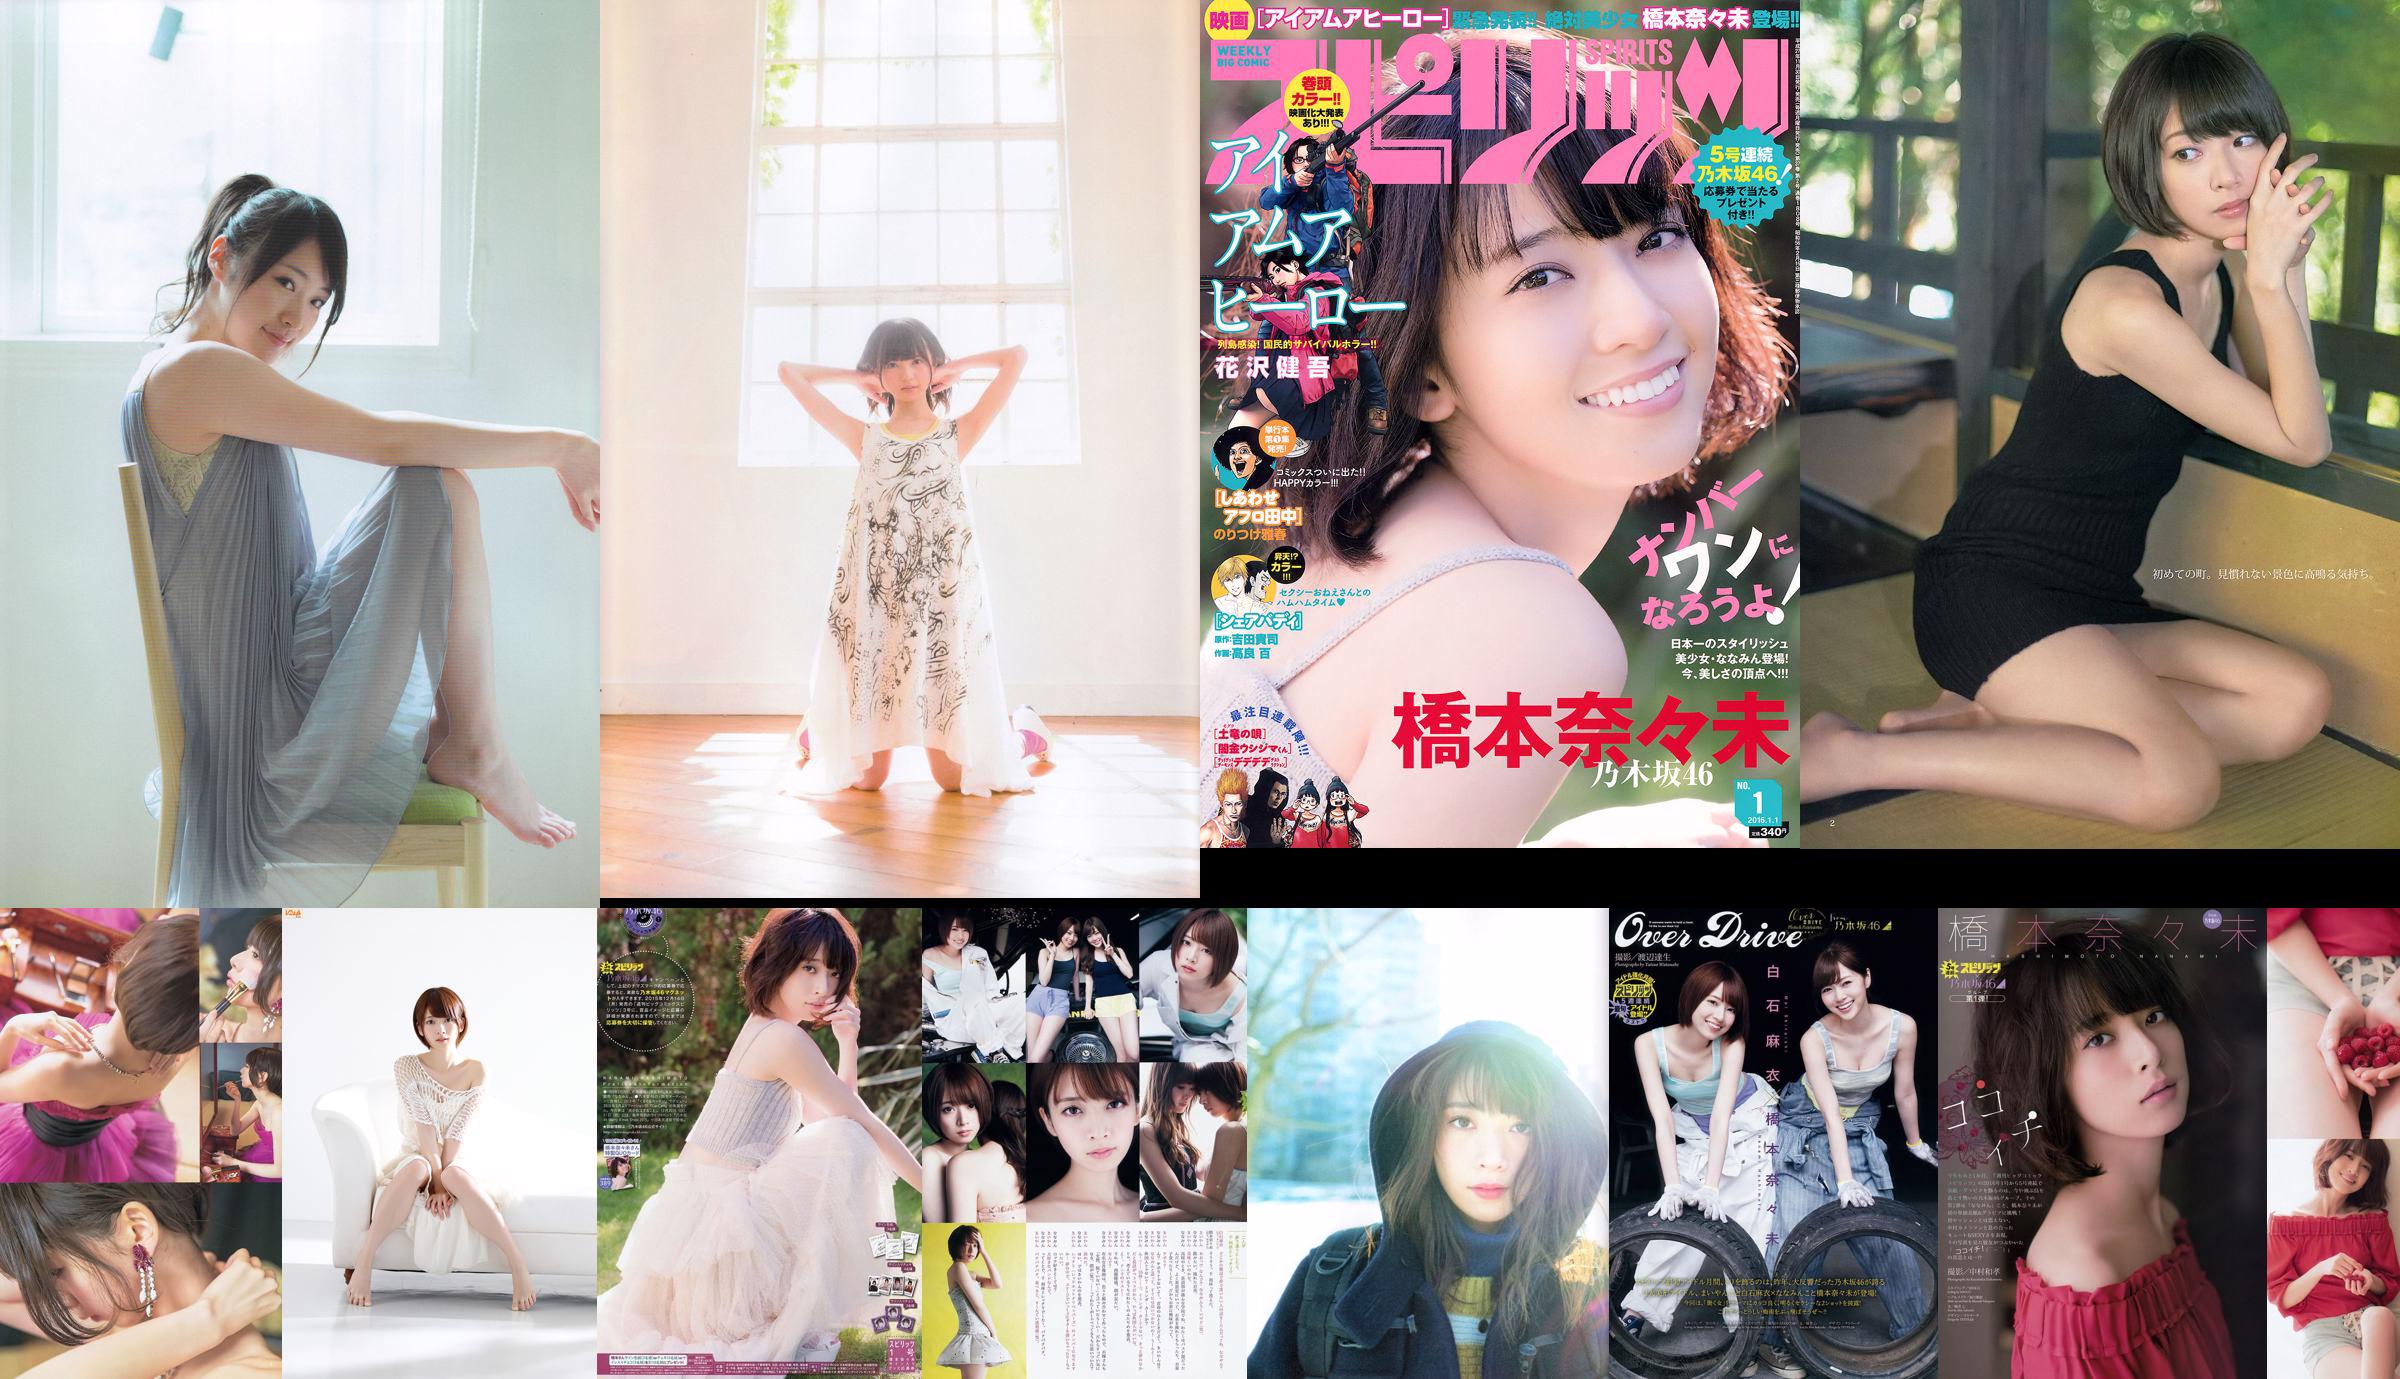 Hashimoto Nasumi Momokawa Haruka Private Ebisu Junior High School [Weekly Young Jump] 2013 No.51 Photo Magazine No.50c77f Page 1